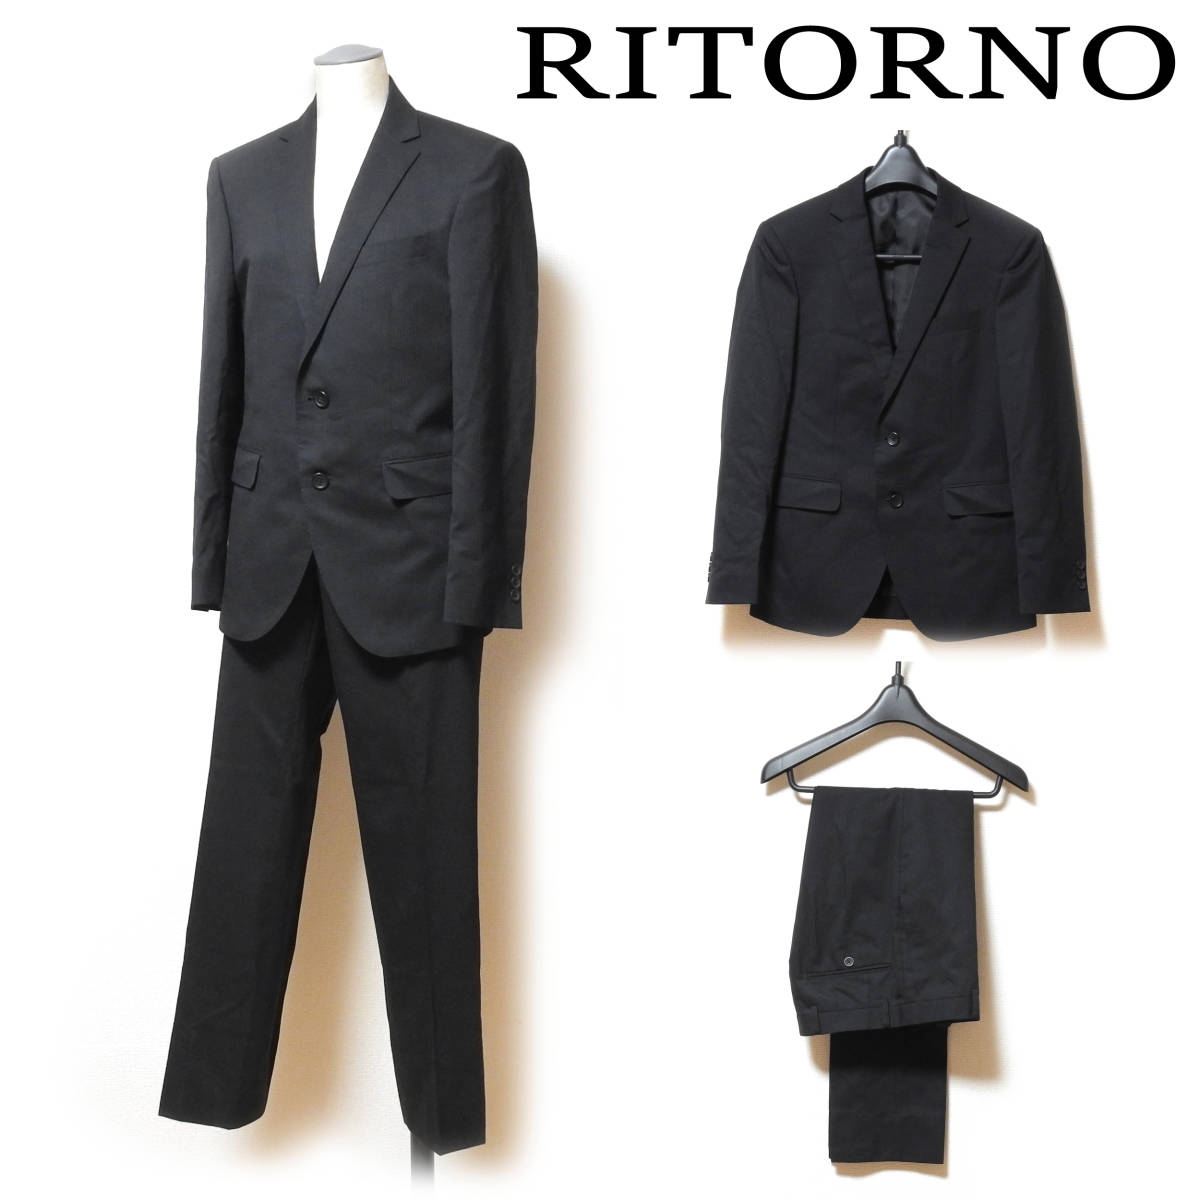 RITORNO リトルノ メンズスーツ セットアップ上下 サイズYA4 ブラック